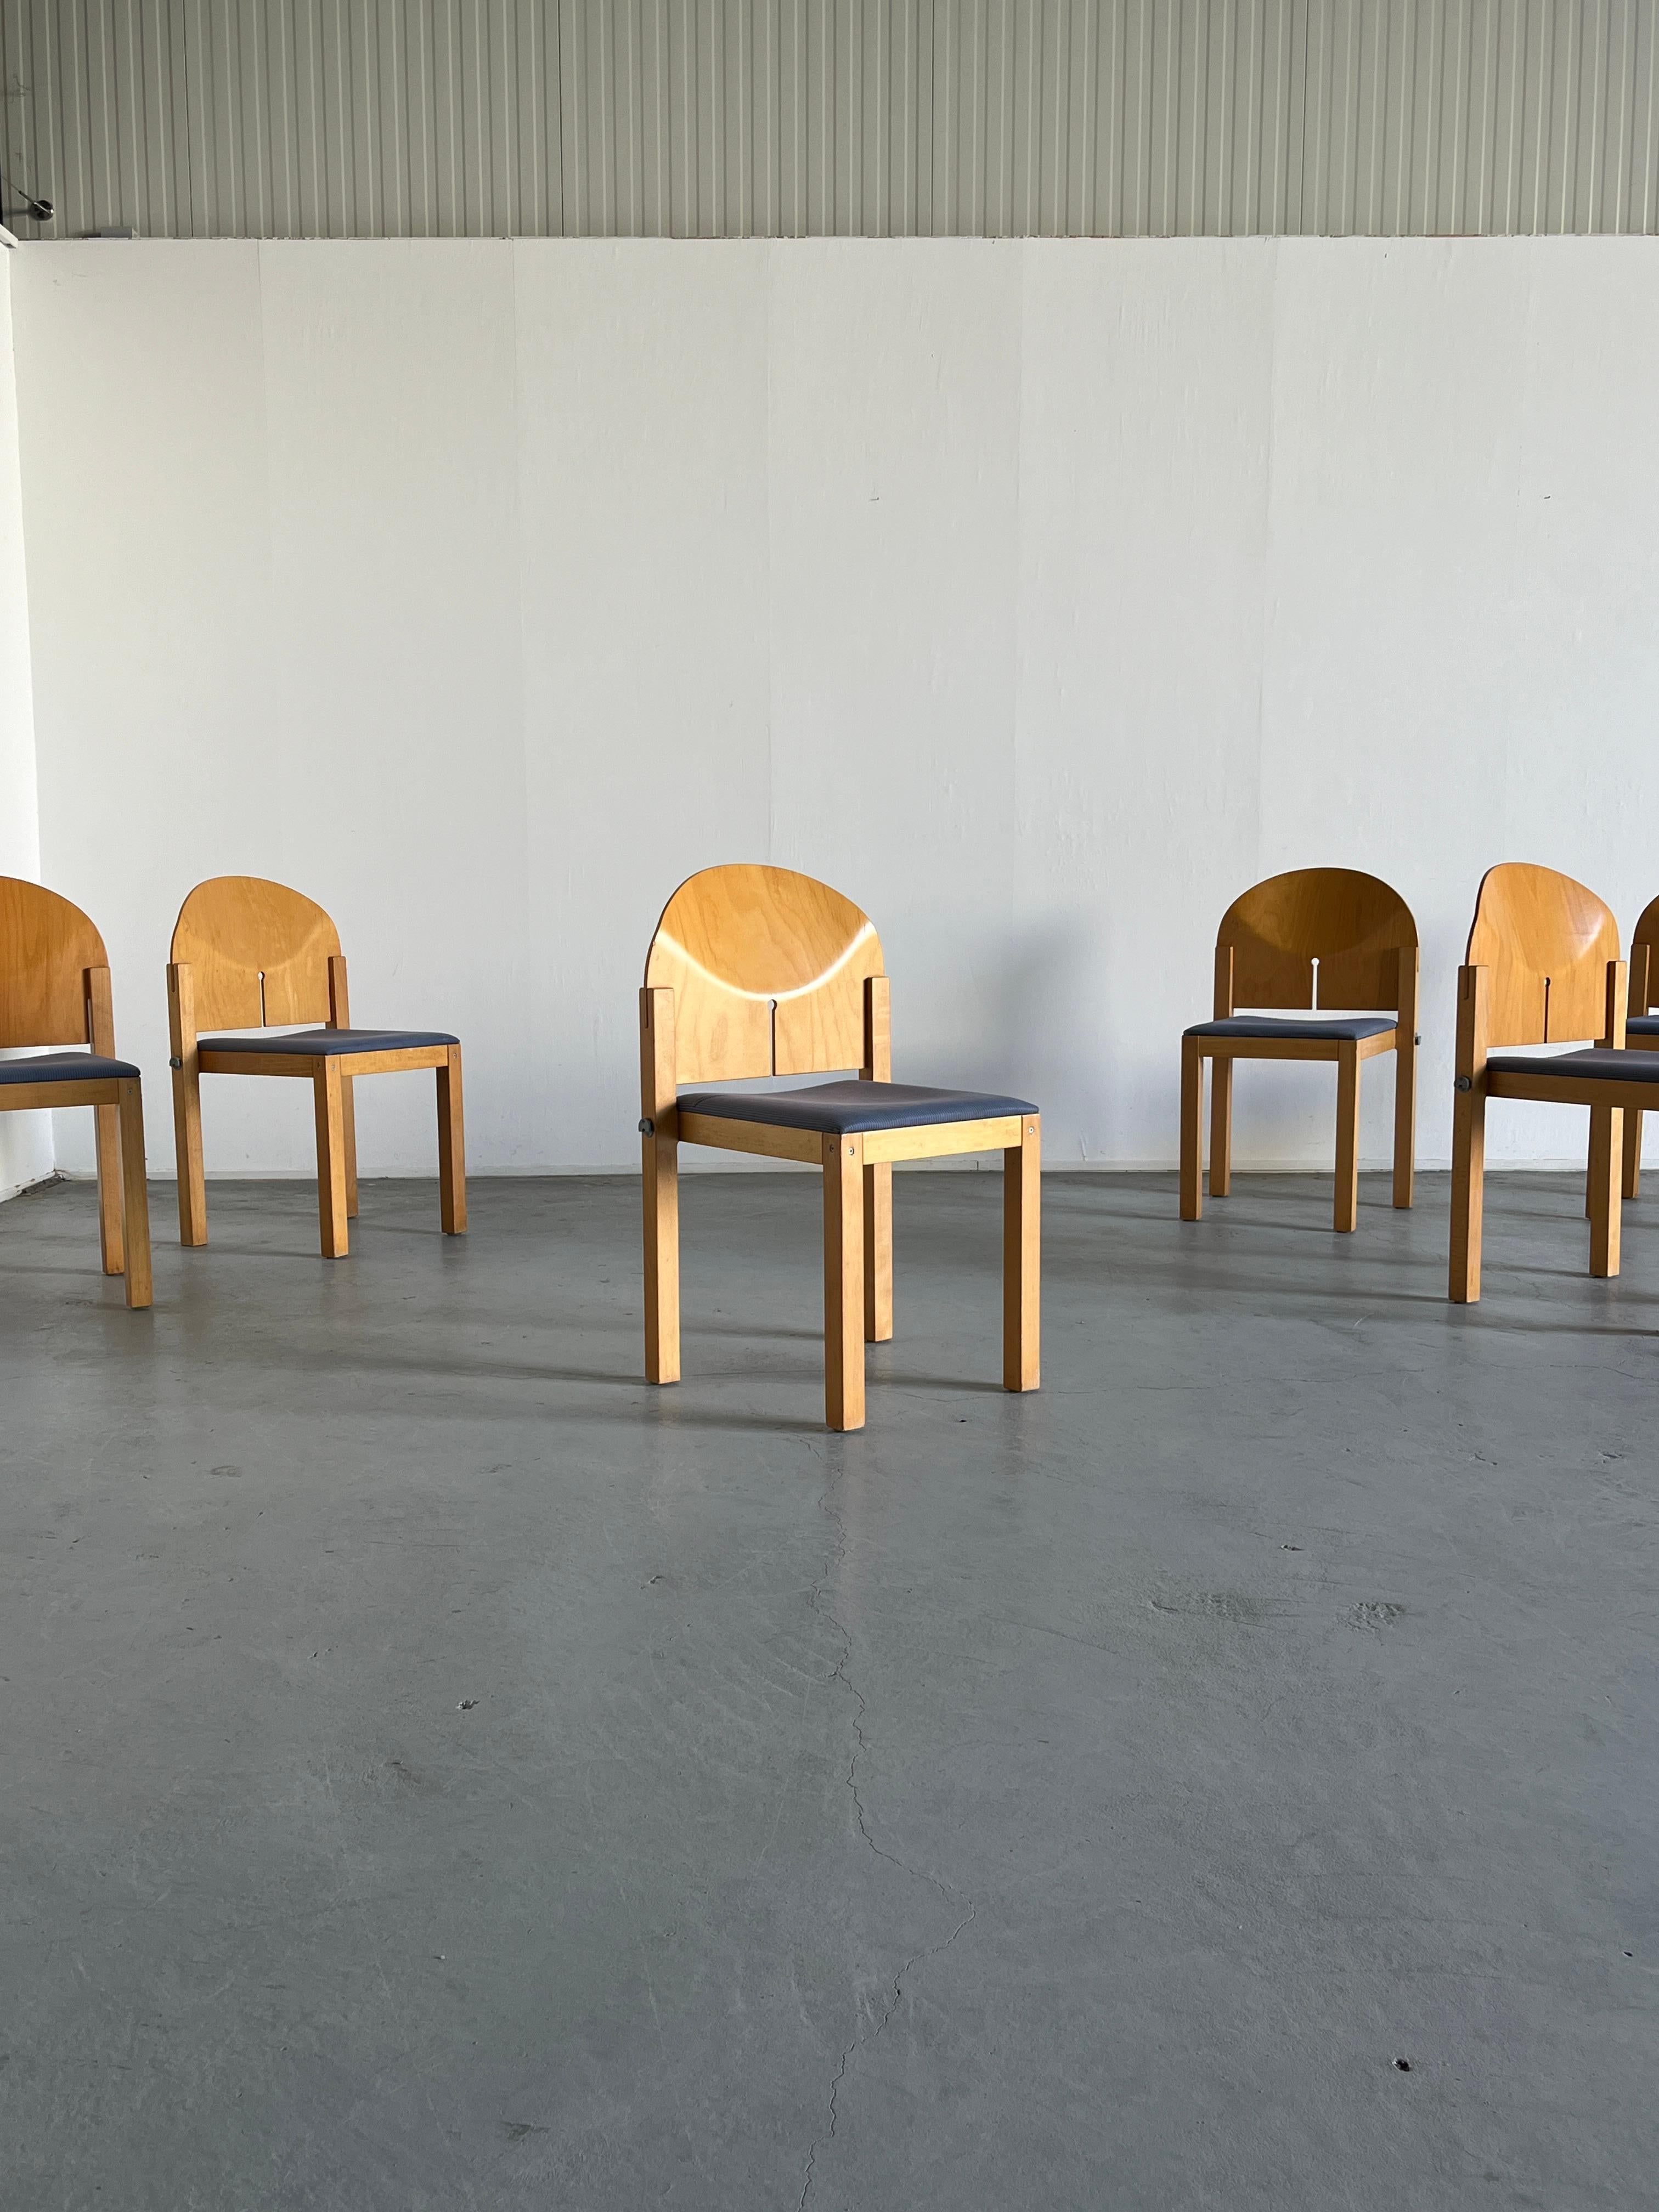 Sechs schöne postmoderne Esszimmerstühle aus den 1980er Jahren von Arno Votteler für Bisterfeld und Weiss.
Hohe Produktionsqualität.
Erinnert an die Entwürfe von Afra und Tobia Scarpa für B&B Italia in den 1970er Jahren.
Can verbunden werden, um